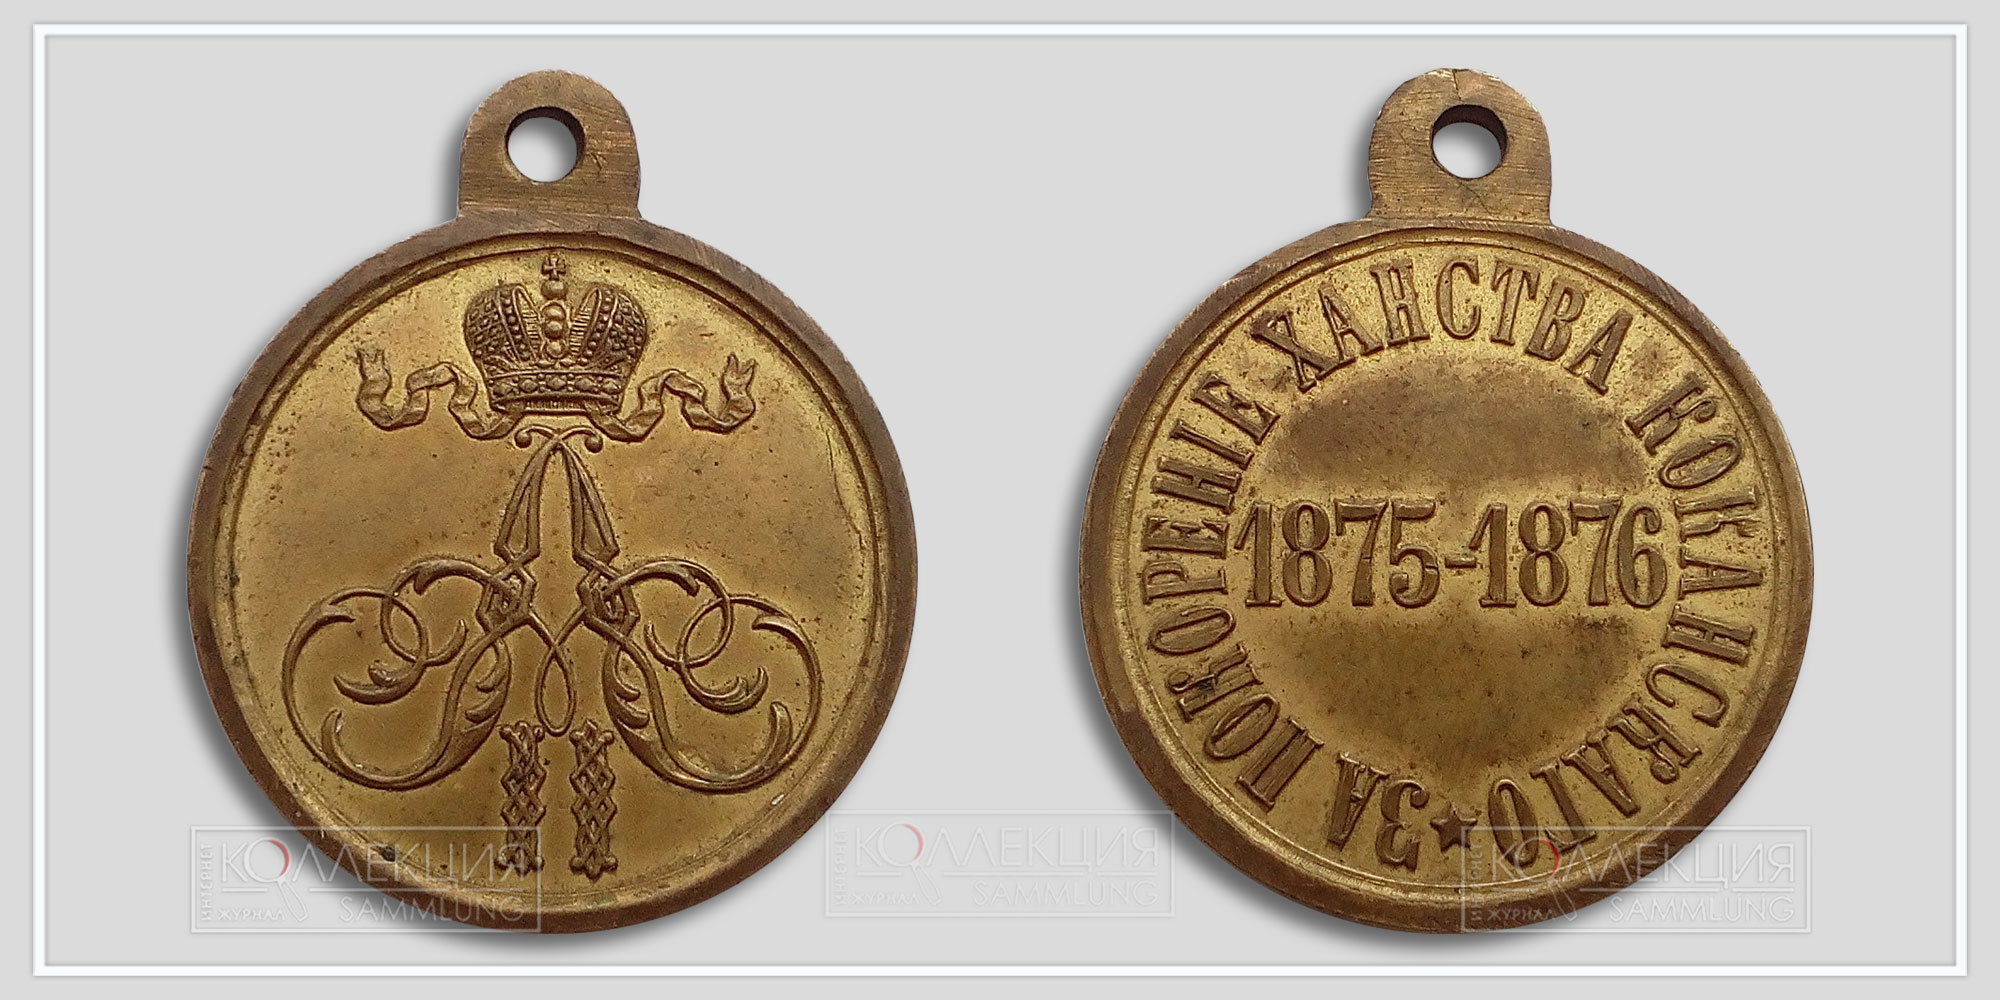 Медаль "За покорение ханства Кокандского" 1875-1876